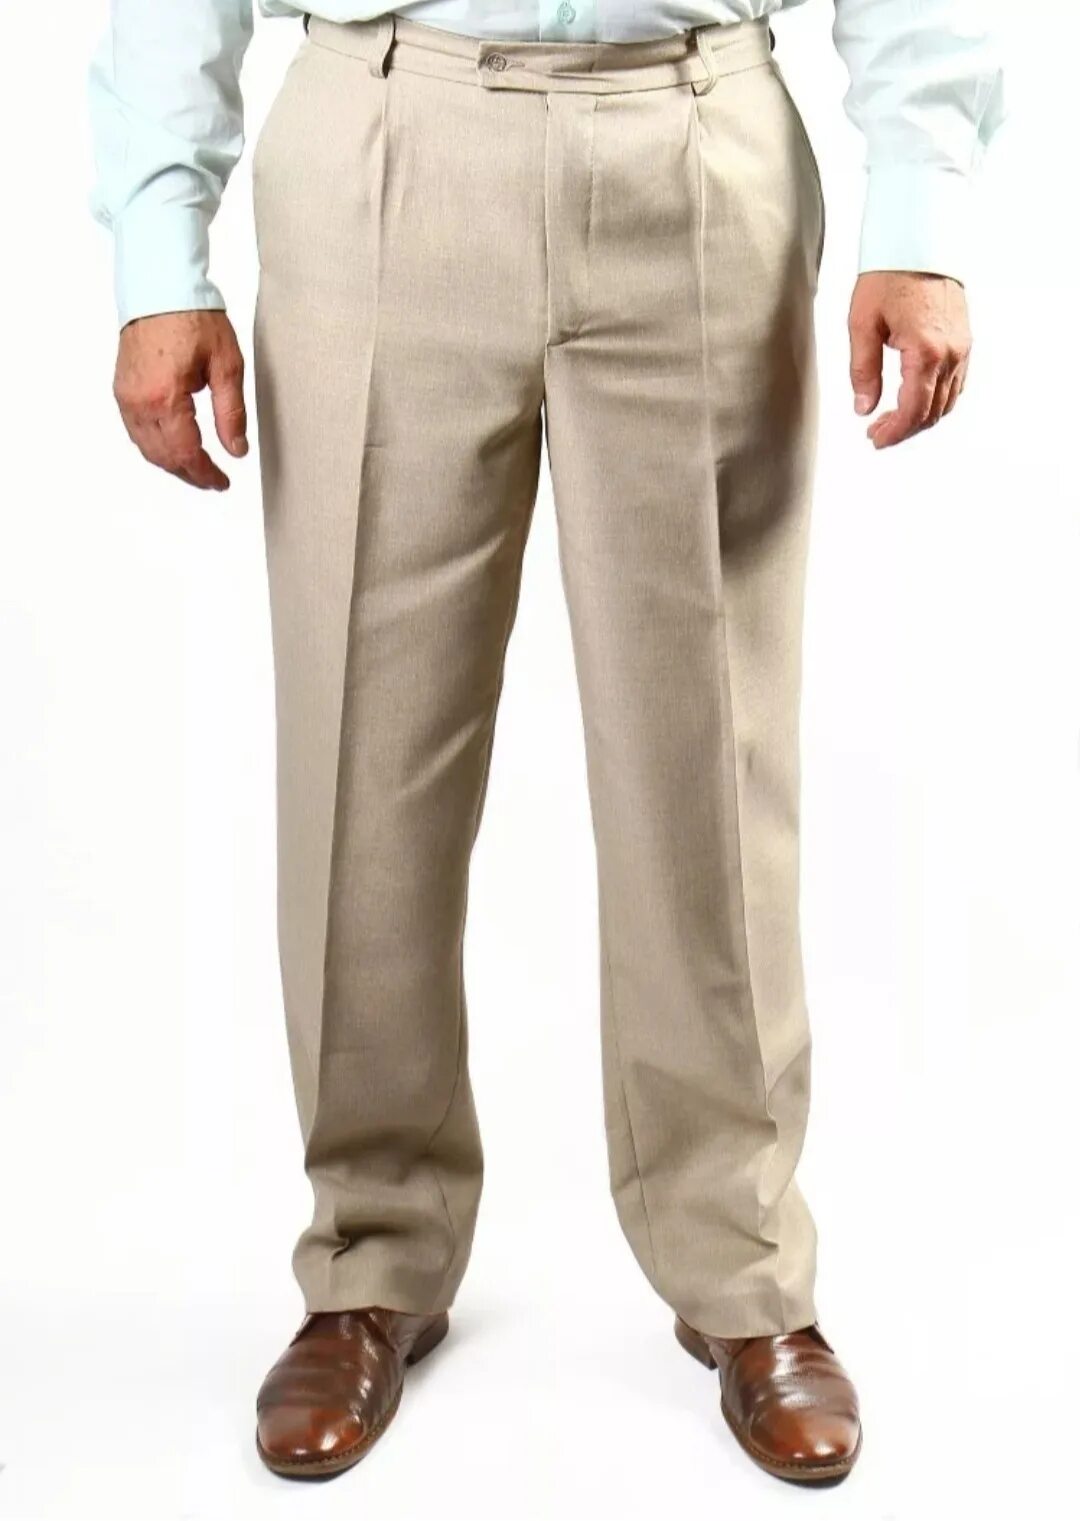 Benetton мужские брюки Cotton Linen. Брюки мужские классические. Летние классические брюки для мужчин. Мужчина в классических брюках. Размер классических брюк мужских